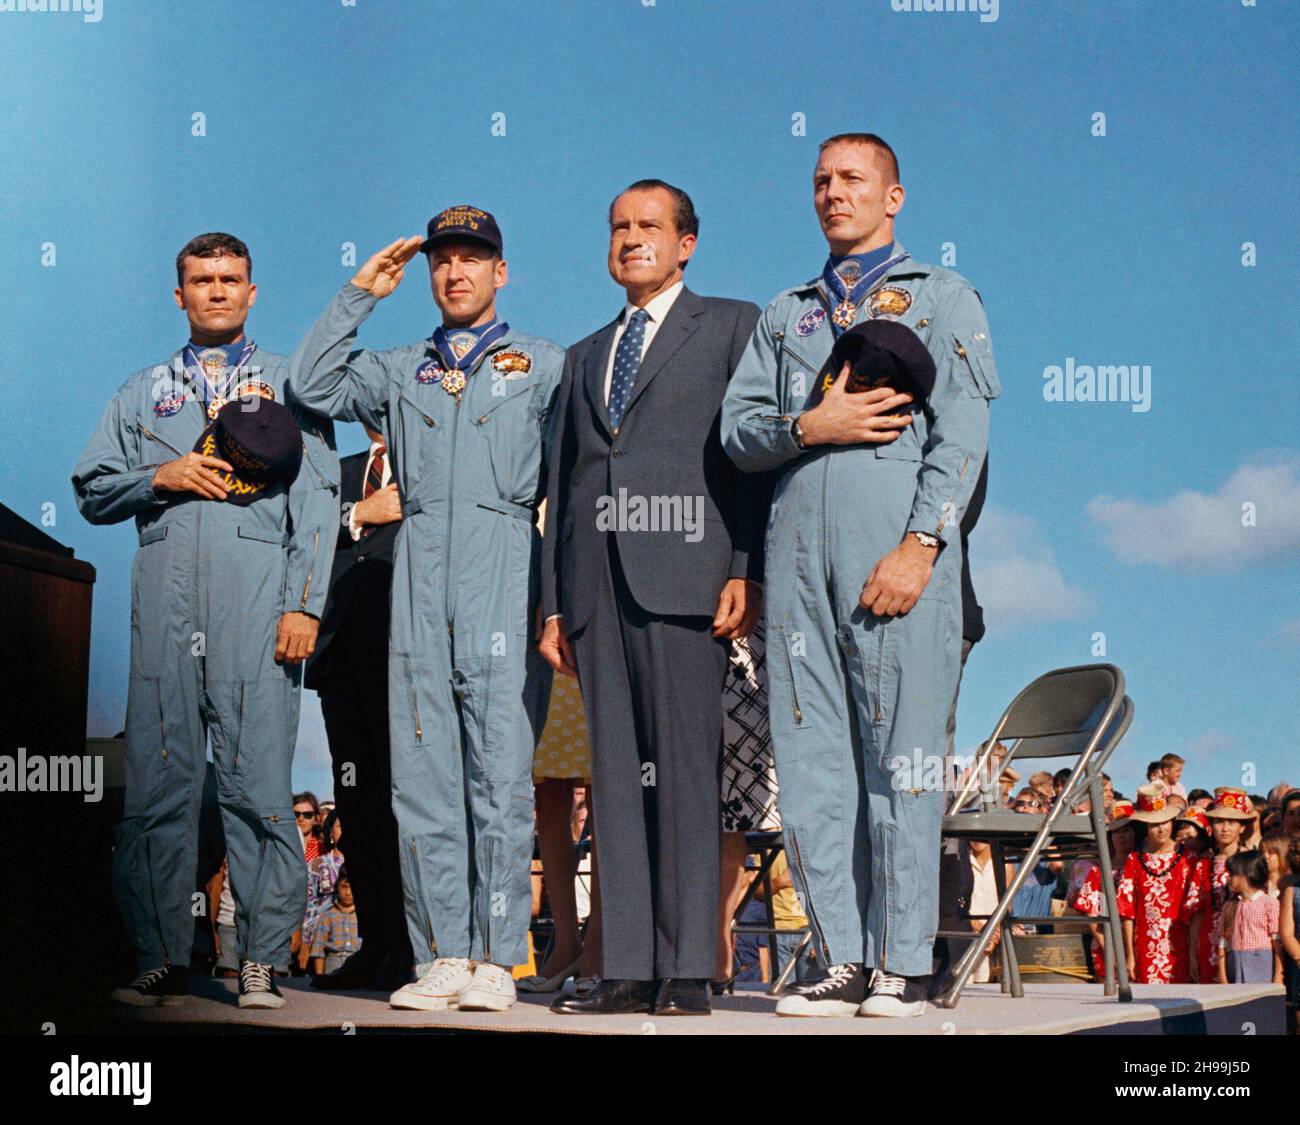 Präsident Richard M. Nixon und die Apollo 13-Besatzungsmitglieder ehren die Flagge der Vereinigten Staaten während der Zeremonien nach der Mission auf dem Luftwaffenstützpunkt Hickam, Hawaii. Die Astronauten James A. Lovell Jr. (Kapitän der US-Marine, begrüßt die Flagge), John L. Swigert Jr., Kommandomodulpilot (rechts) und Fred W. Haise Jr., Mondmodulpilot (links), wurden vom Chief Executive mit der Presidential Medal of Freedom ausgezeichnet. Der Apollo 13-Spritzwasserfall fand am 17. April 1970 um 12:07:44 Uhr (CST) statt, etwa eineinhalb Tage vor der Preisverleihung. Stockfoto